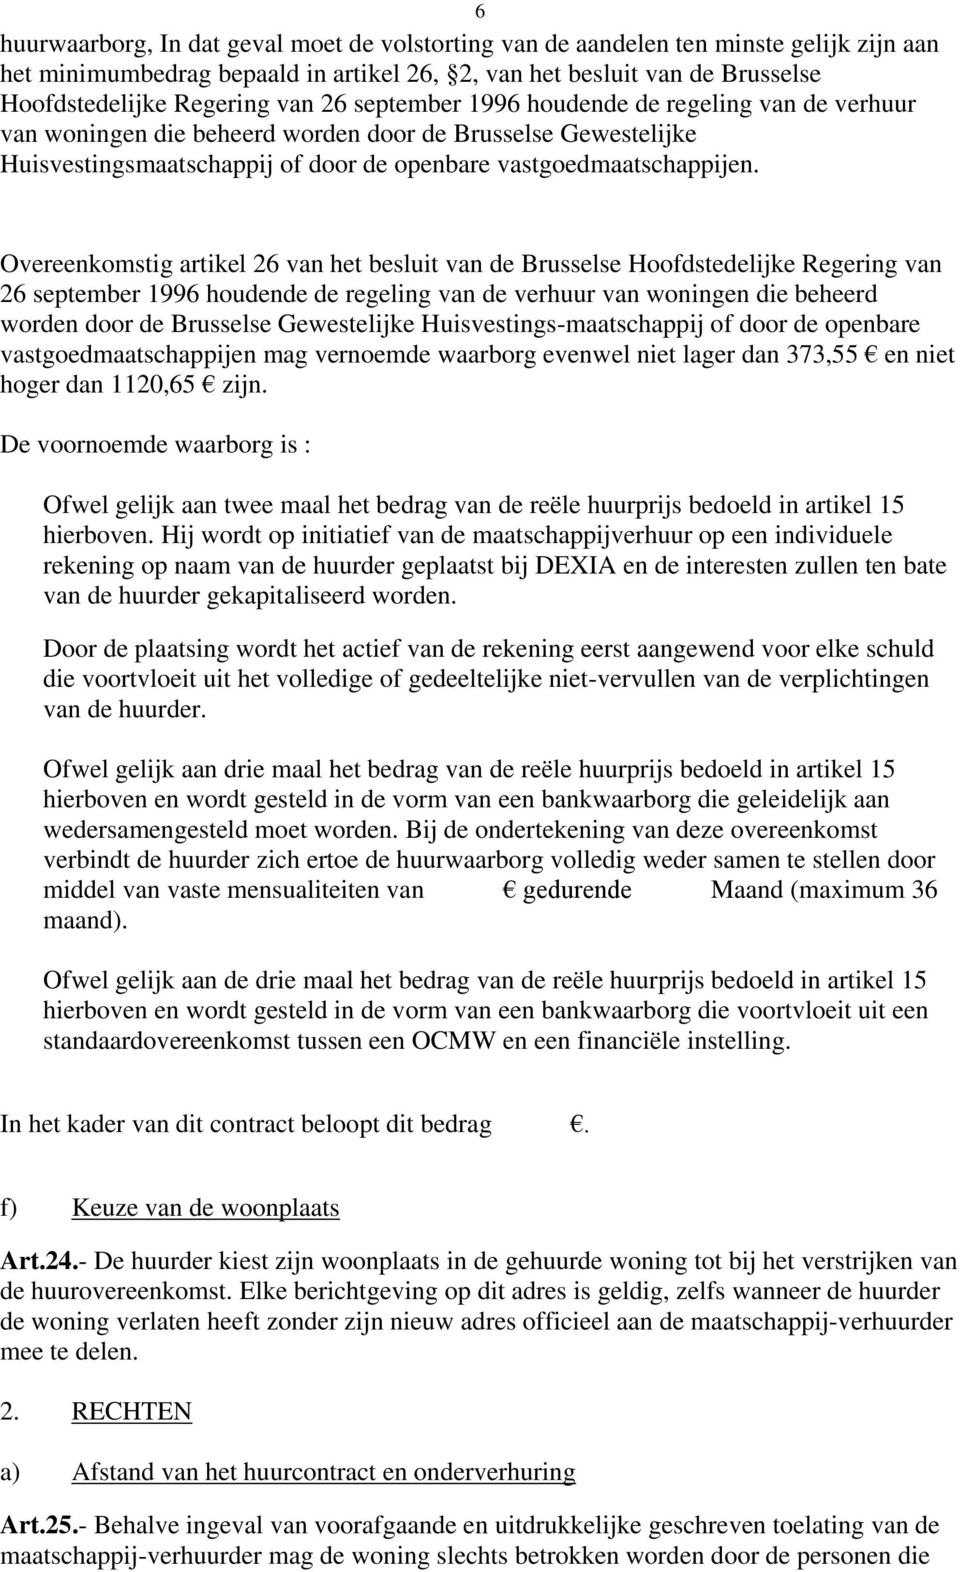 Overeenkomstig artikel 26 van het besluit van de Brusselse Hoofdstedelijke Regering van 26 september 1996 houdende de regeling van de verhuur van woningen die beheerd worden door de Brusselse